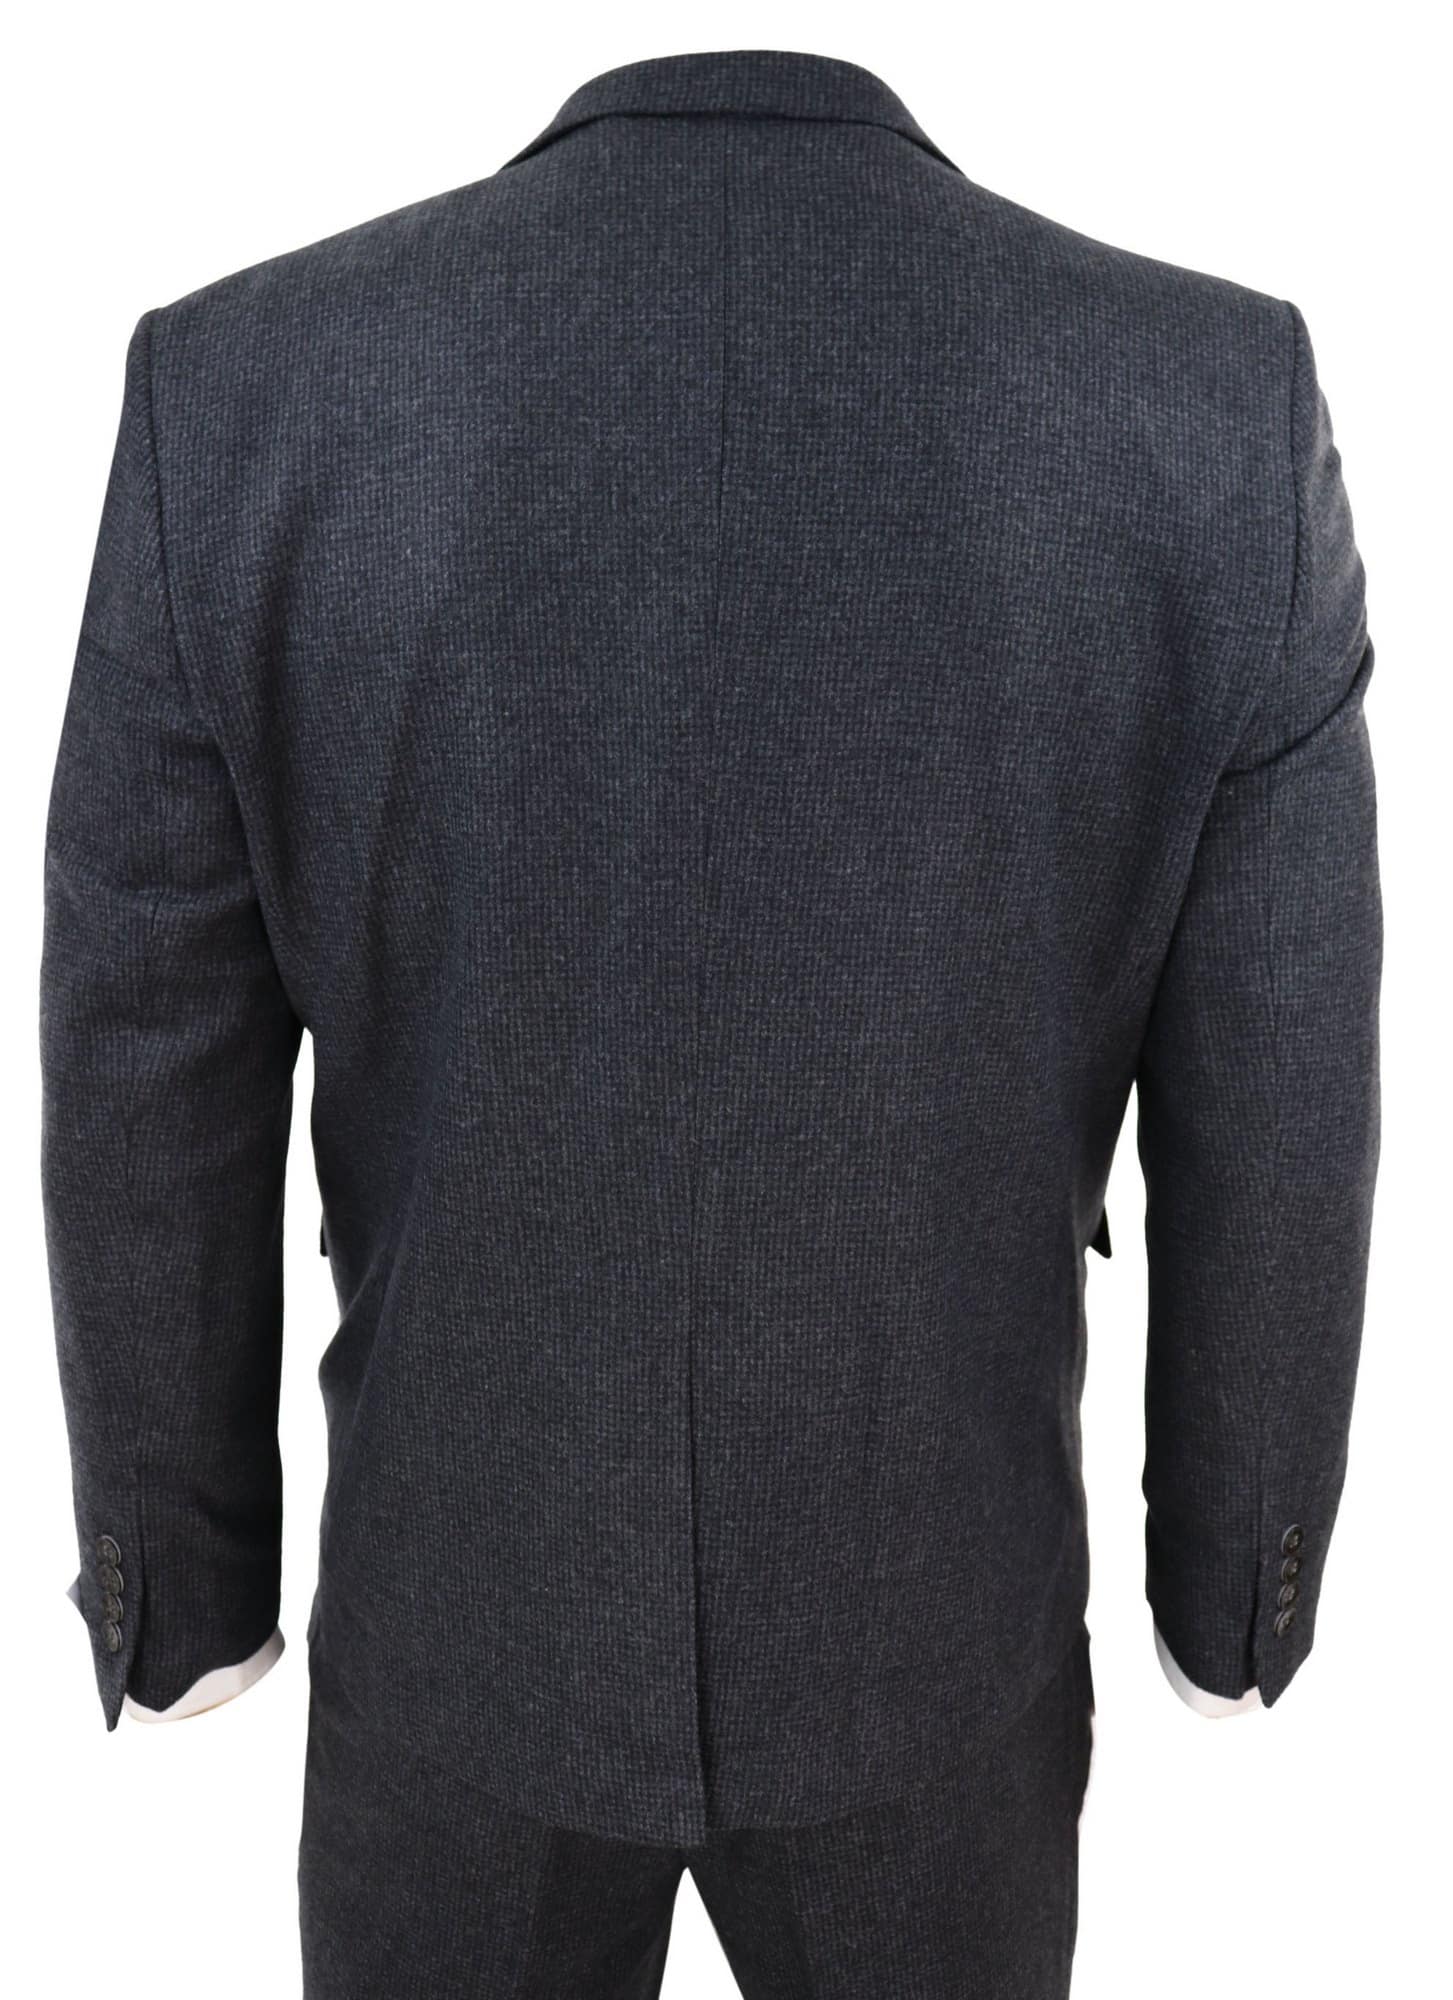 Dark Grey Tweed 3 Piece Suit: Buy Online - Happy Gentleman United